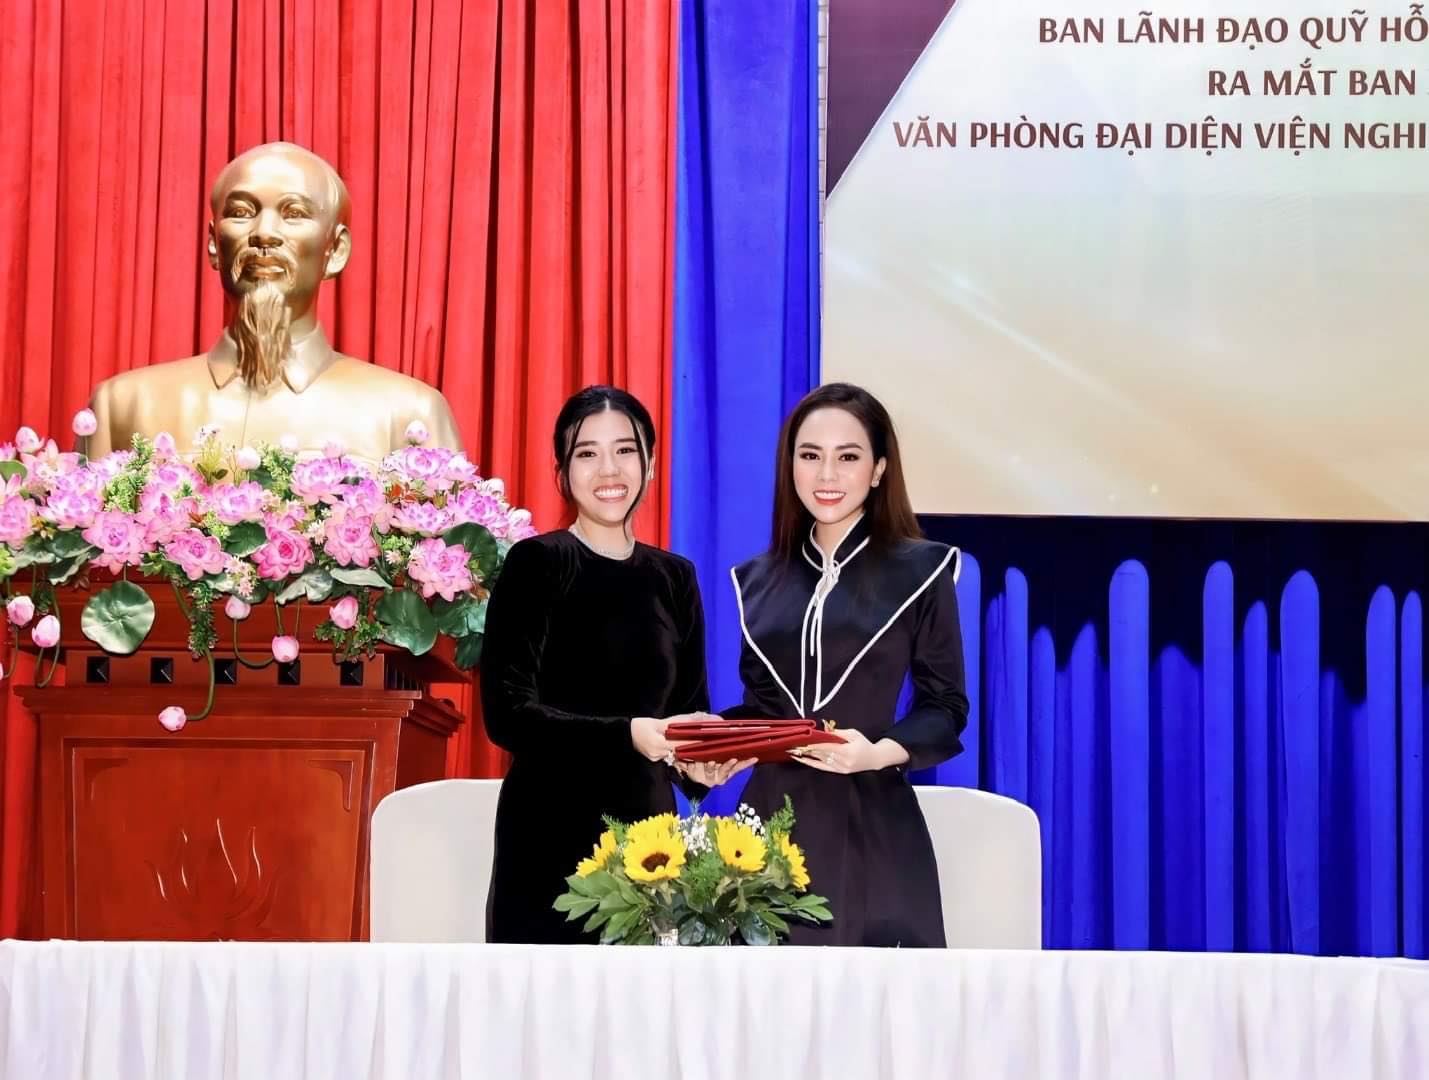 Qua đó bổ nhiệm bà Lê Thị Hồng Thắm được bổ nhiệm vào vị trí Chủ tịch chi hội thẩm mỹ.